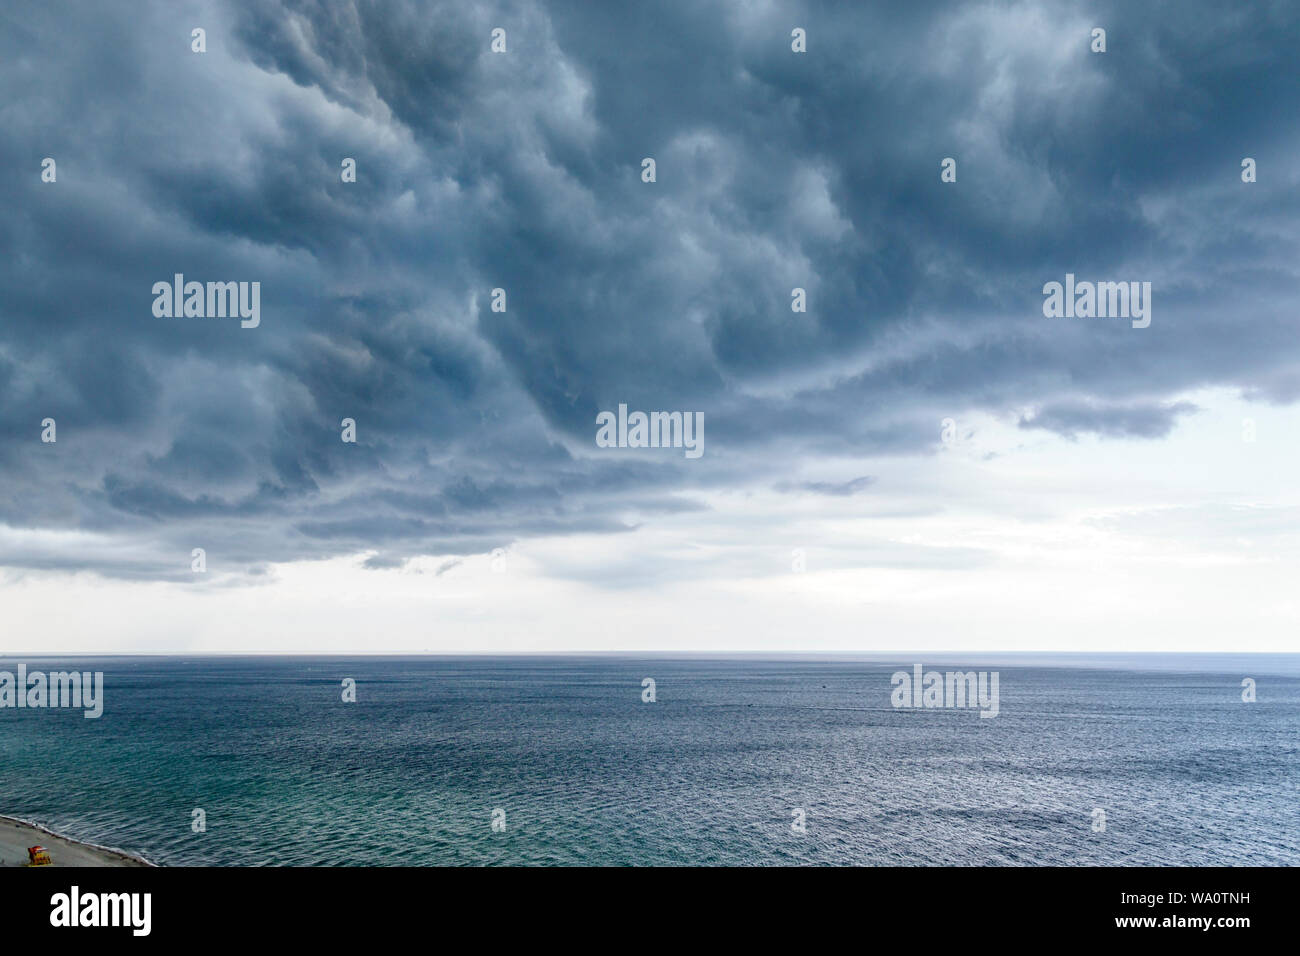 Miami Beach Florida, Atlantischer Ozean, Wolken, Wetterhimmel, Gewitterwolken, Regenwolken, FL190731030 Stockfoto